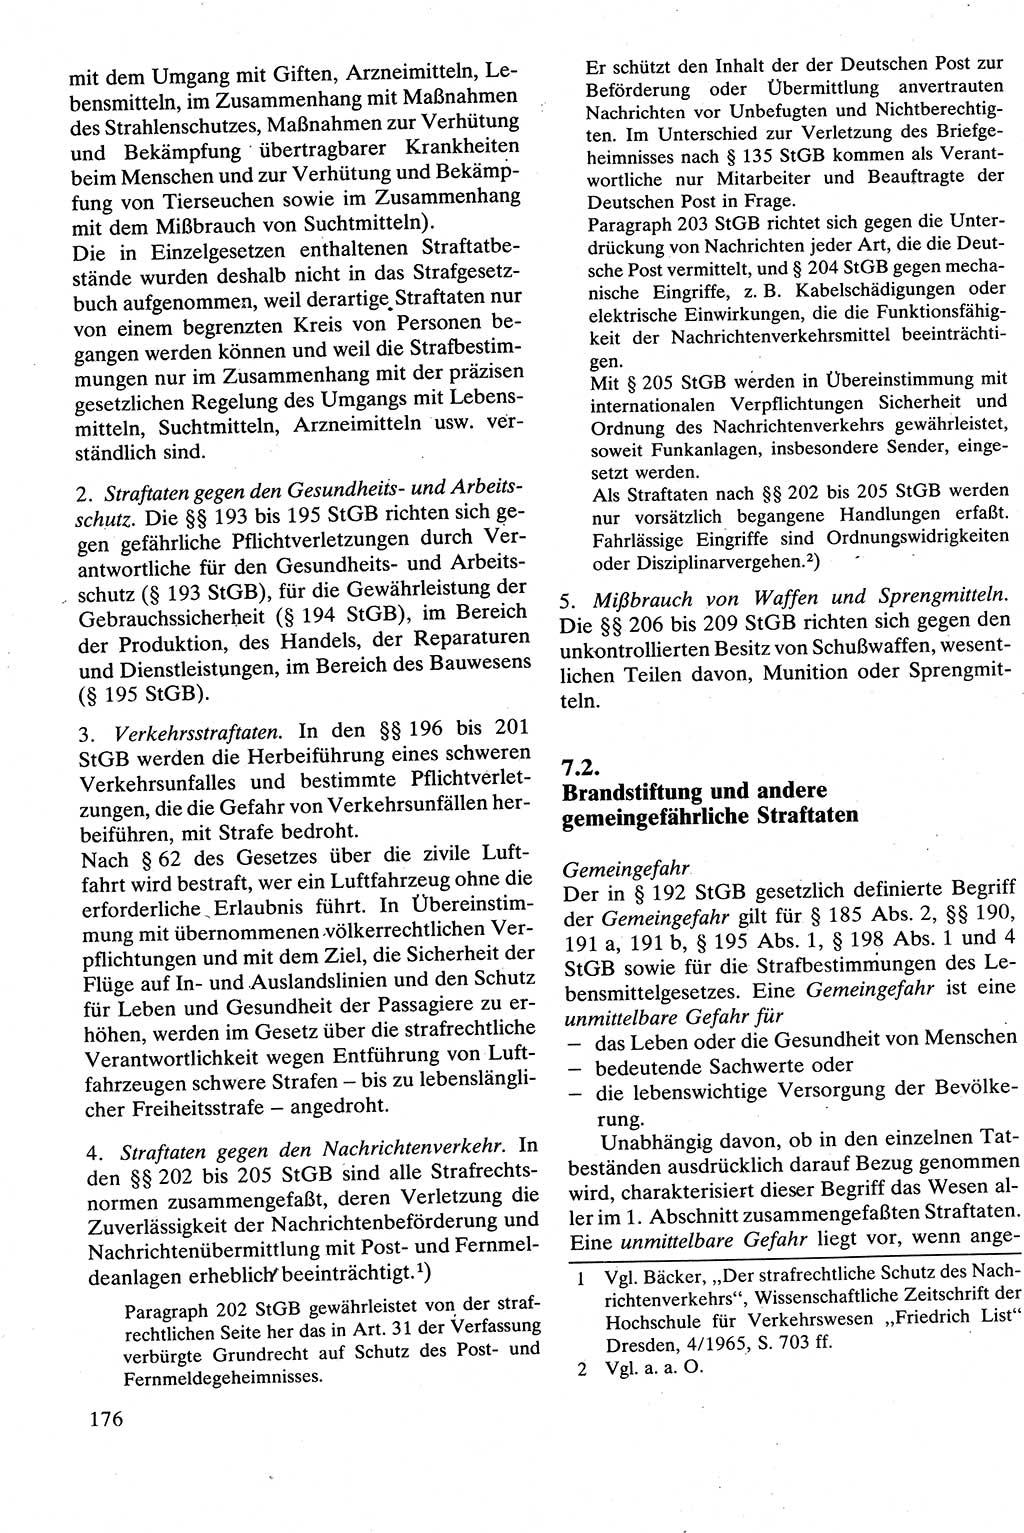 Strafrecht [Deutsche Demokratische Republik (DDR)], Besonderer Teil, Lehrbuch 1981, Seite 176 (Strafr. DDR BT Lb. 1981, S. 176)